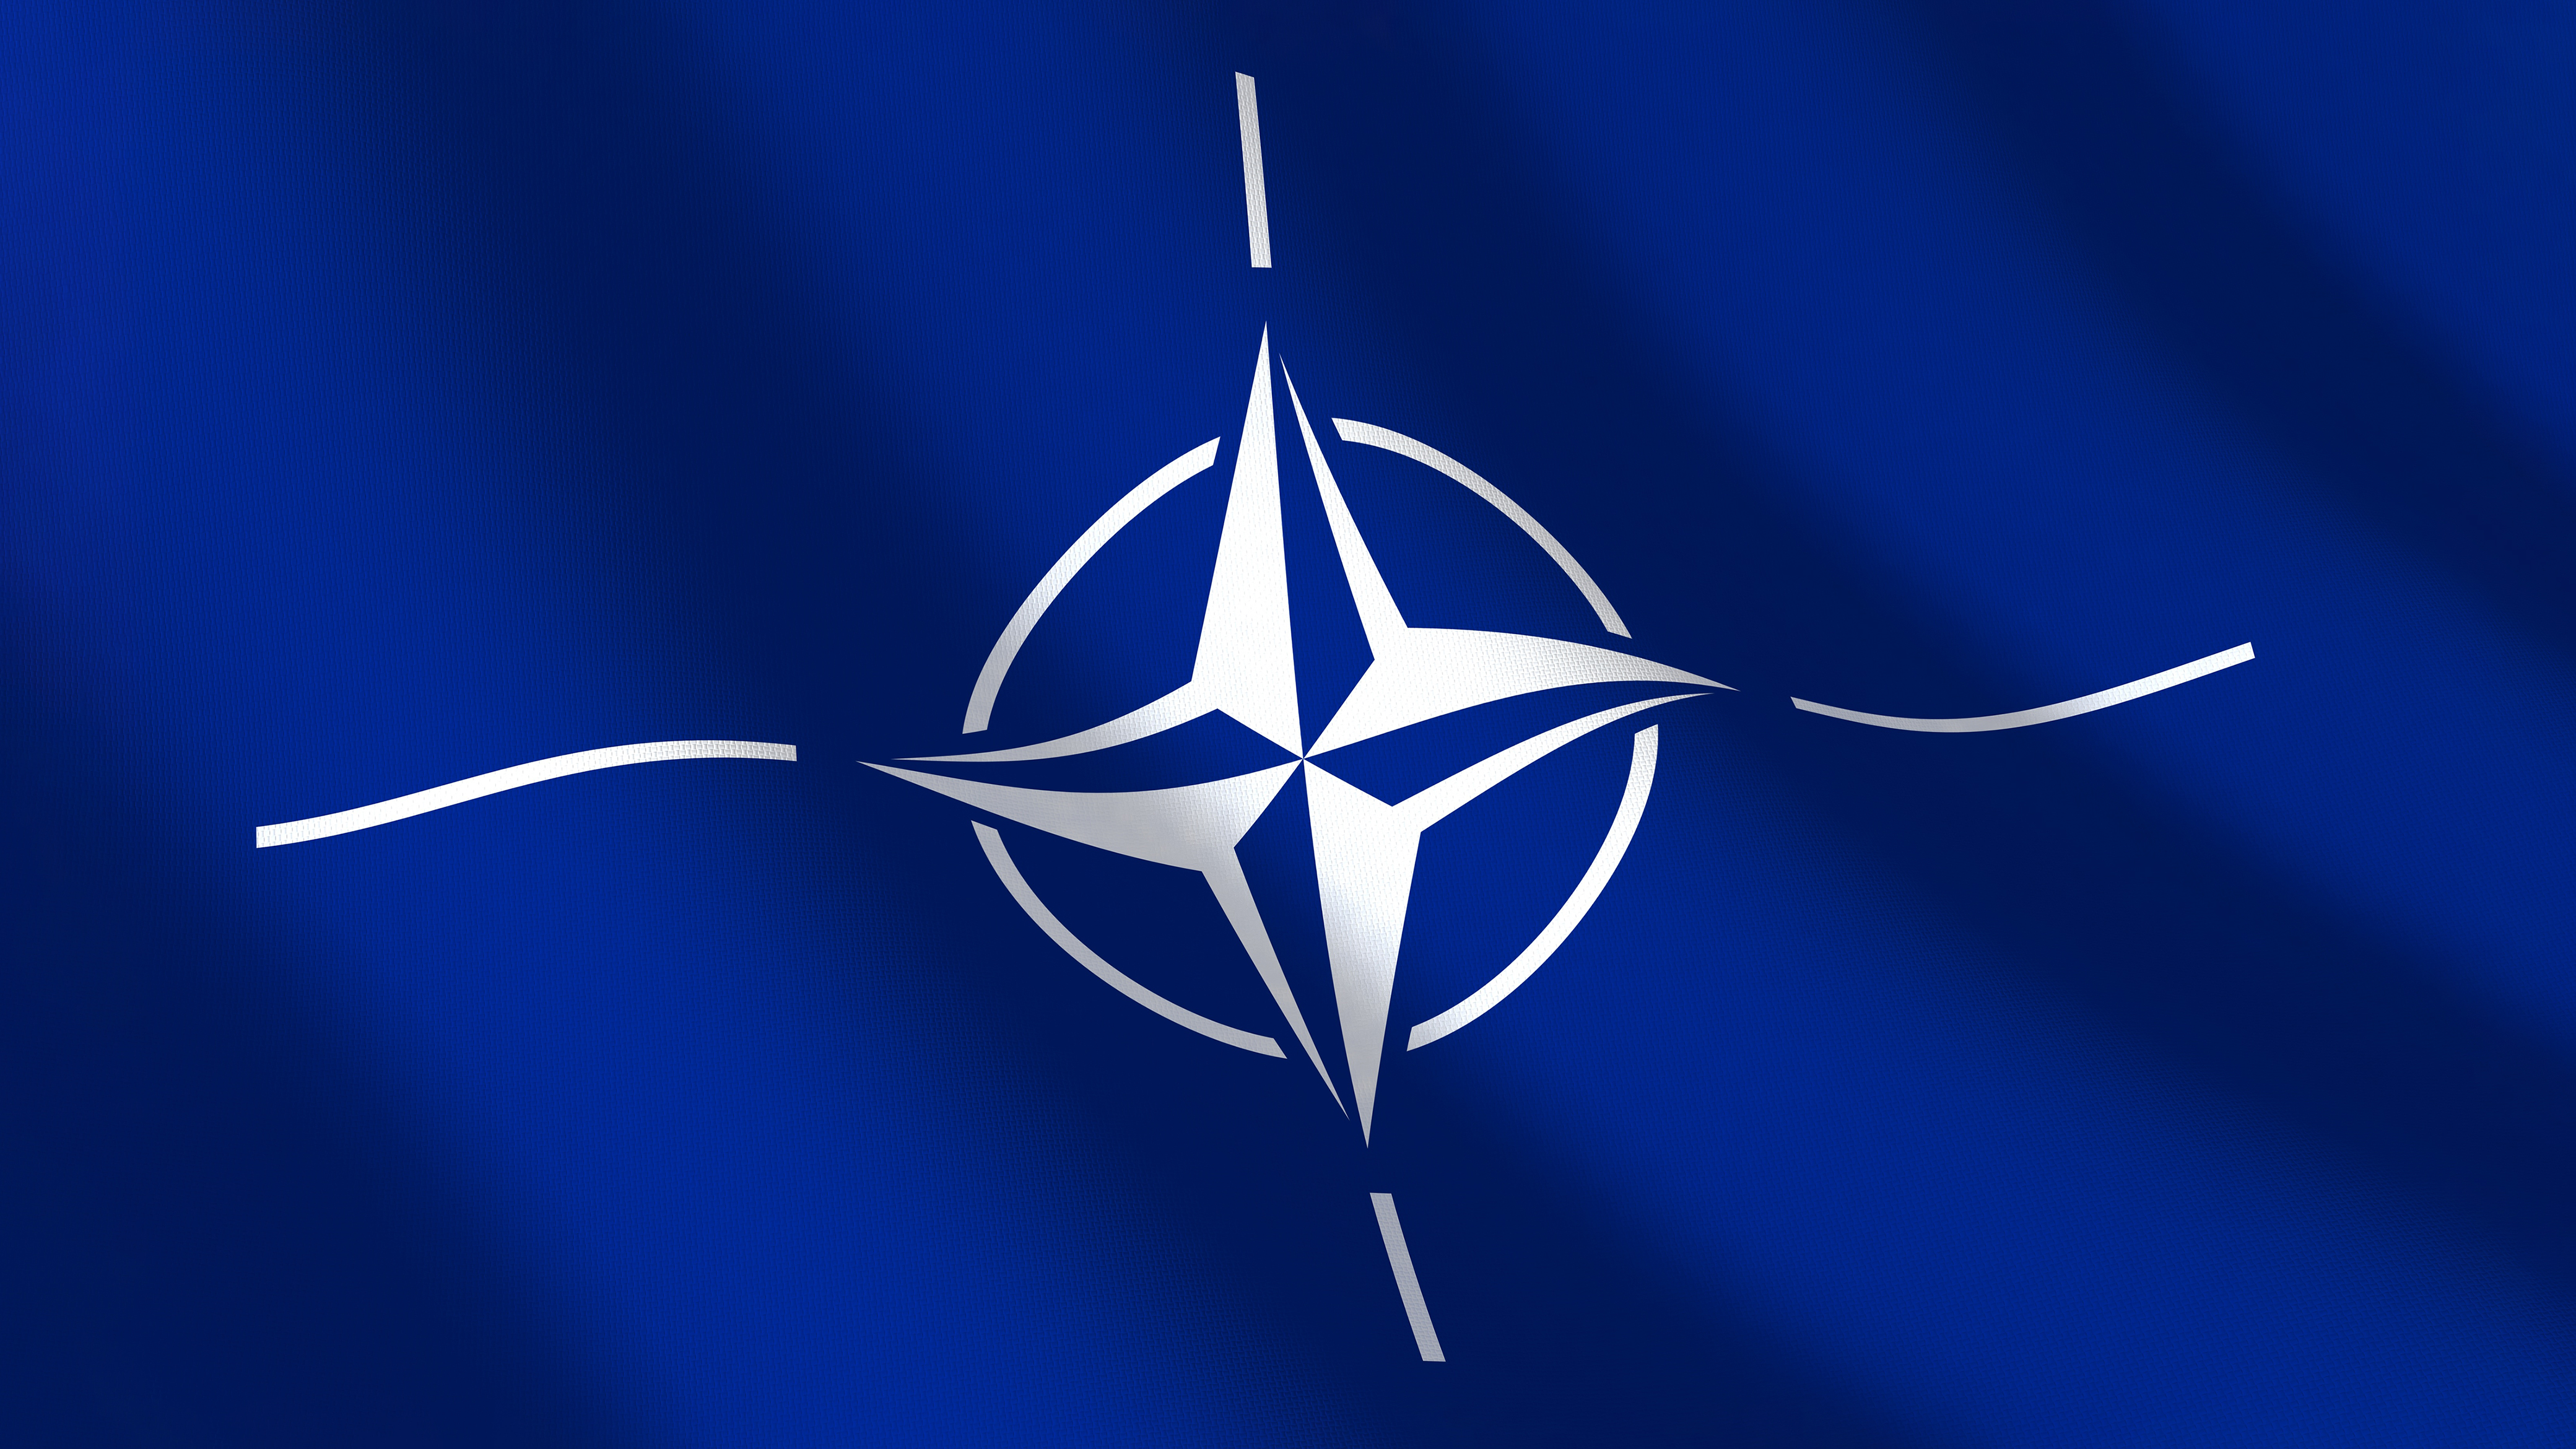 Întâlnire de gradul 0: Miniştrii de Externe din statele membre NATO vor participa la o videoconferinţă pe tema crizei dintre Rusia şi Ucraina şi a securităţii Europei